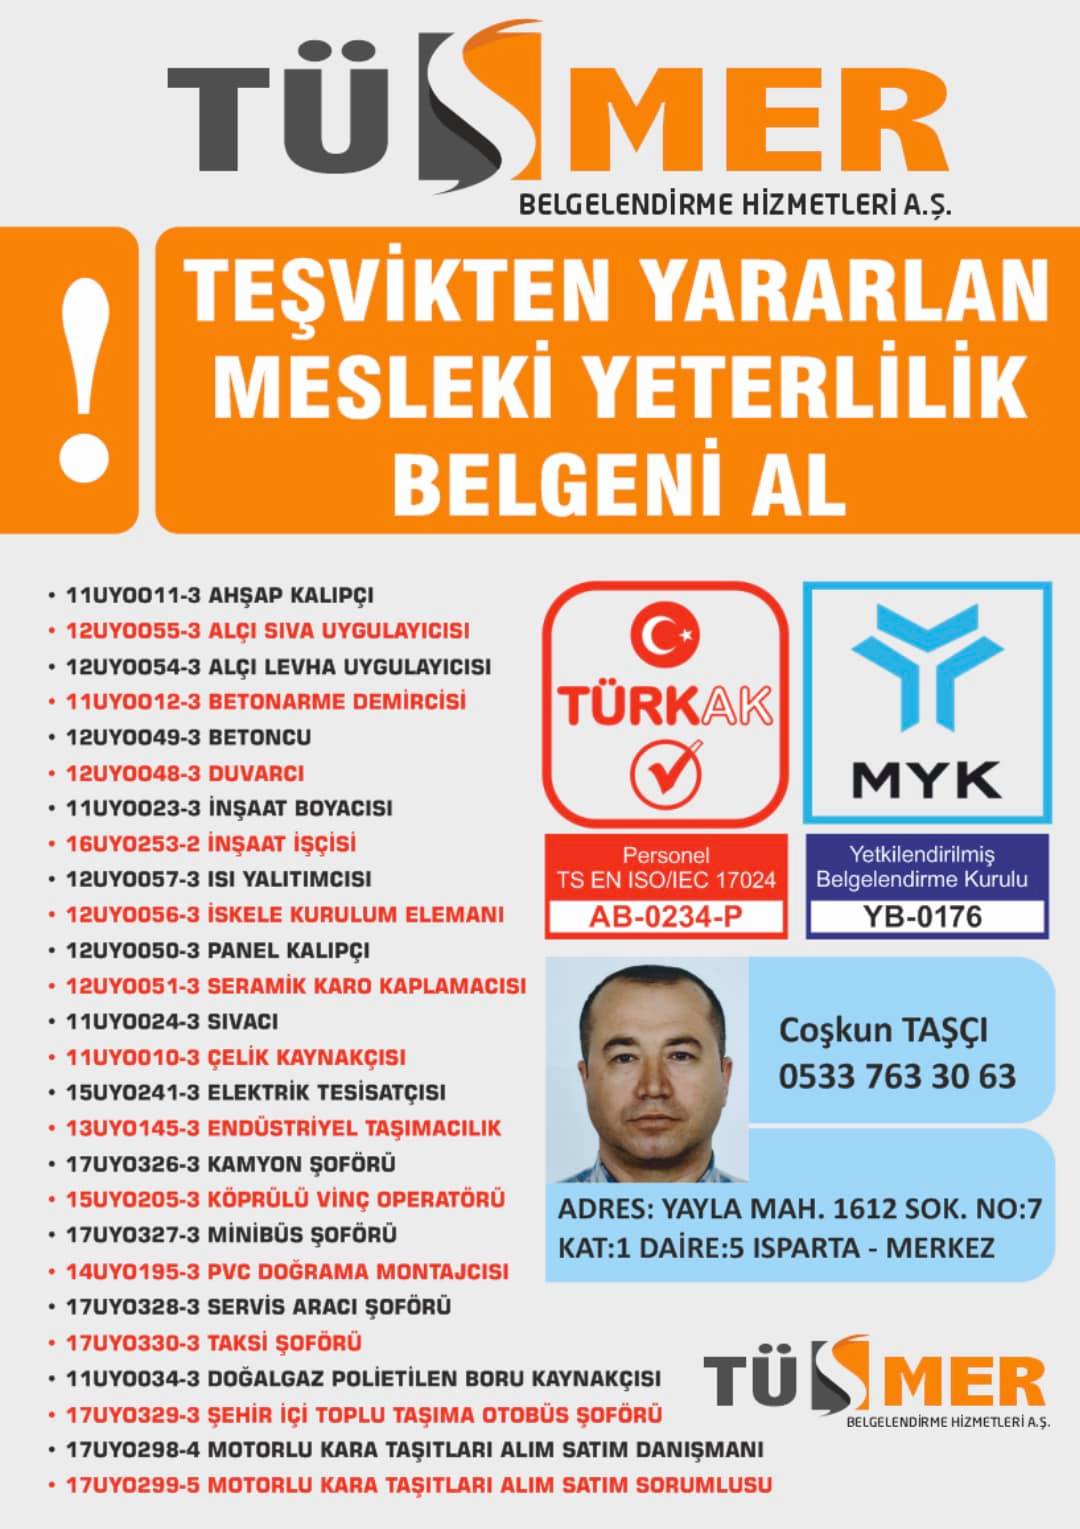 MYK MESLEKİ YETERLİLİK BELGESİ Balmumcu Beşiktaş İstanbul